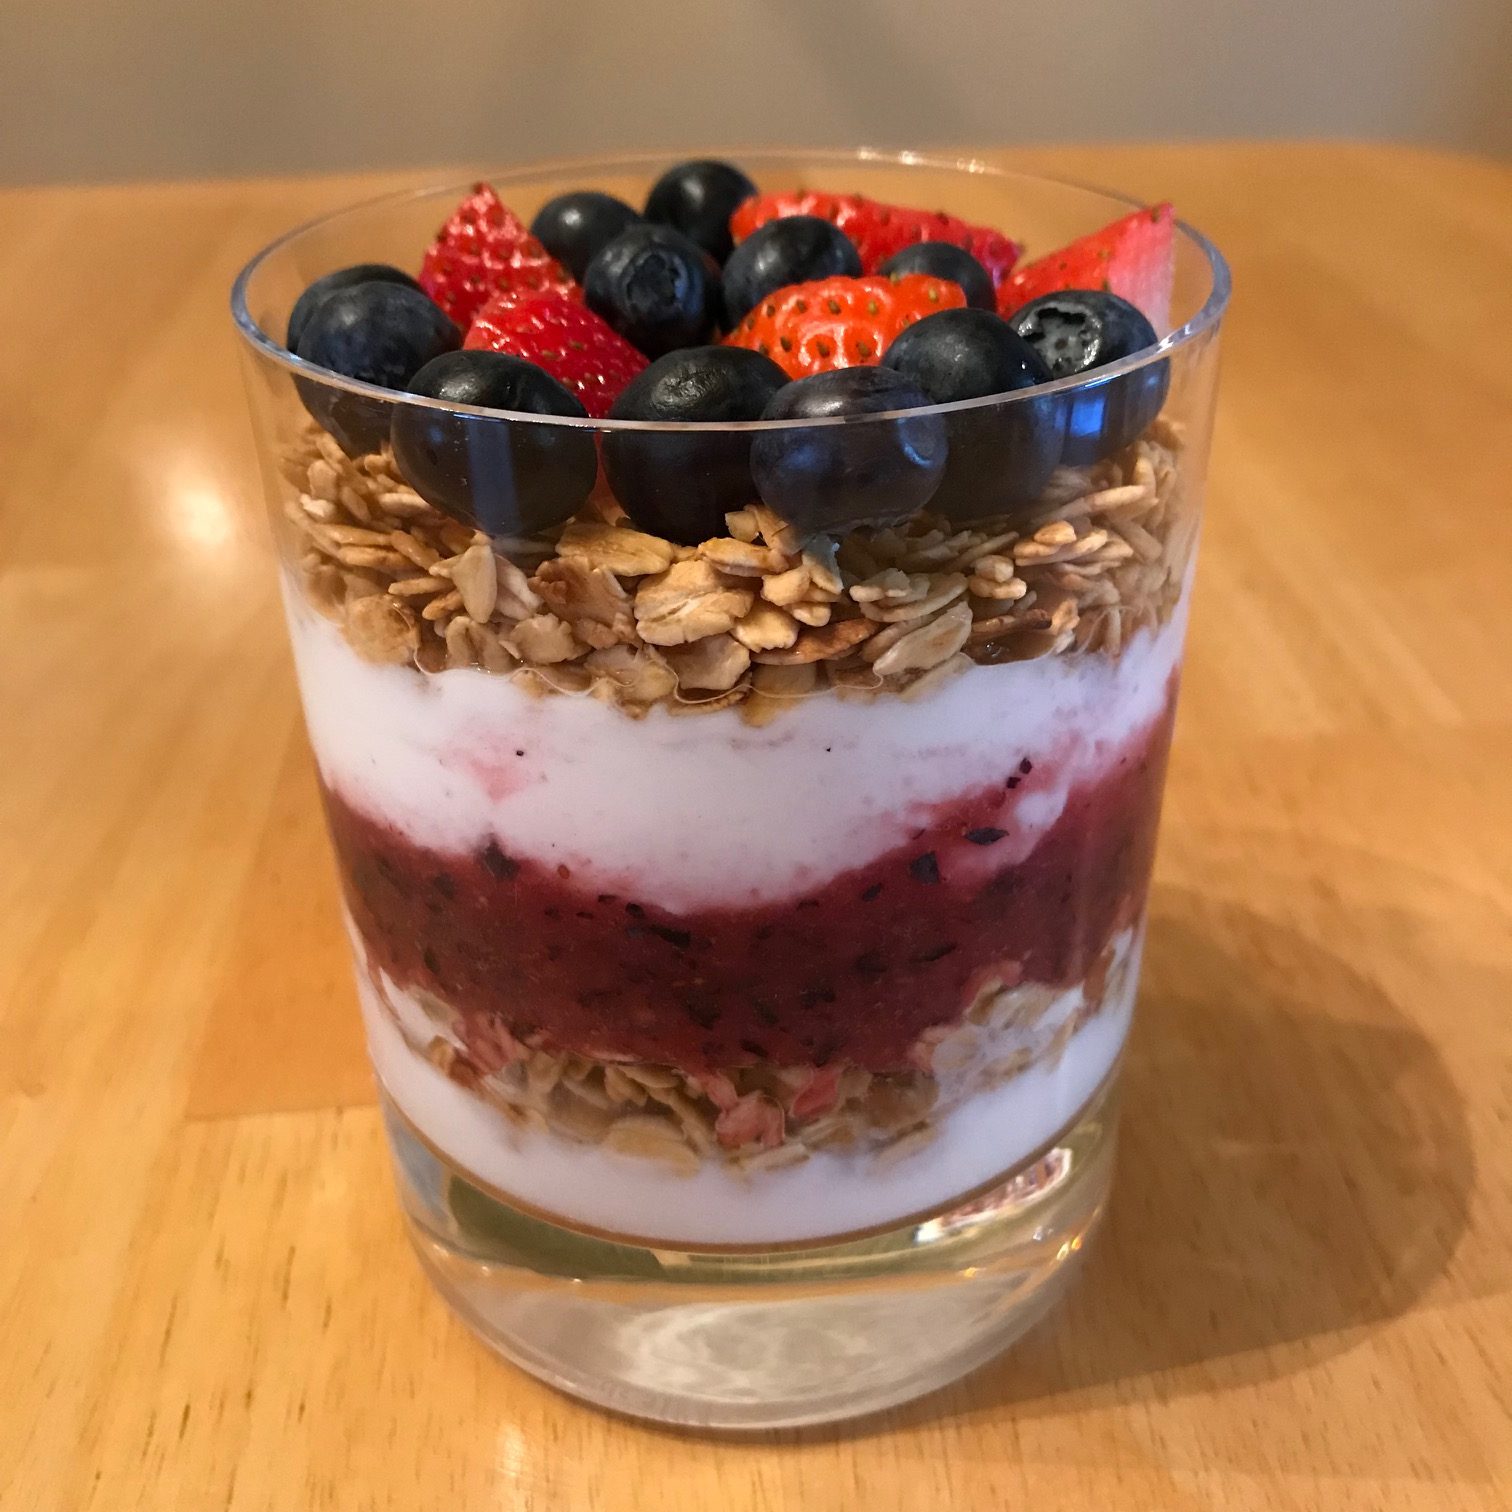 Yogurt parfait with berries and granola